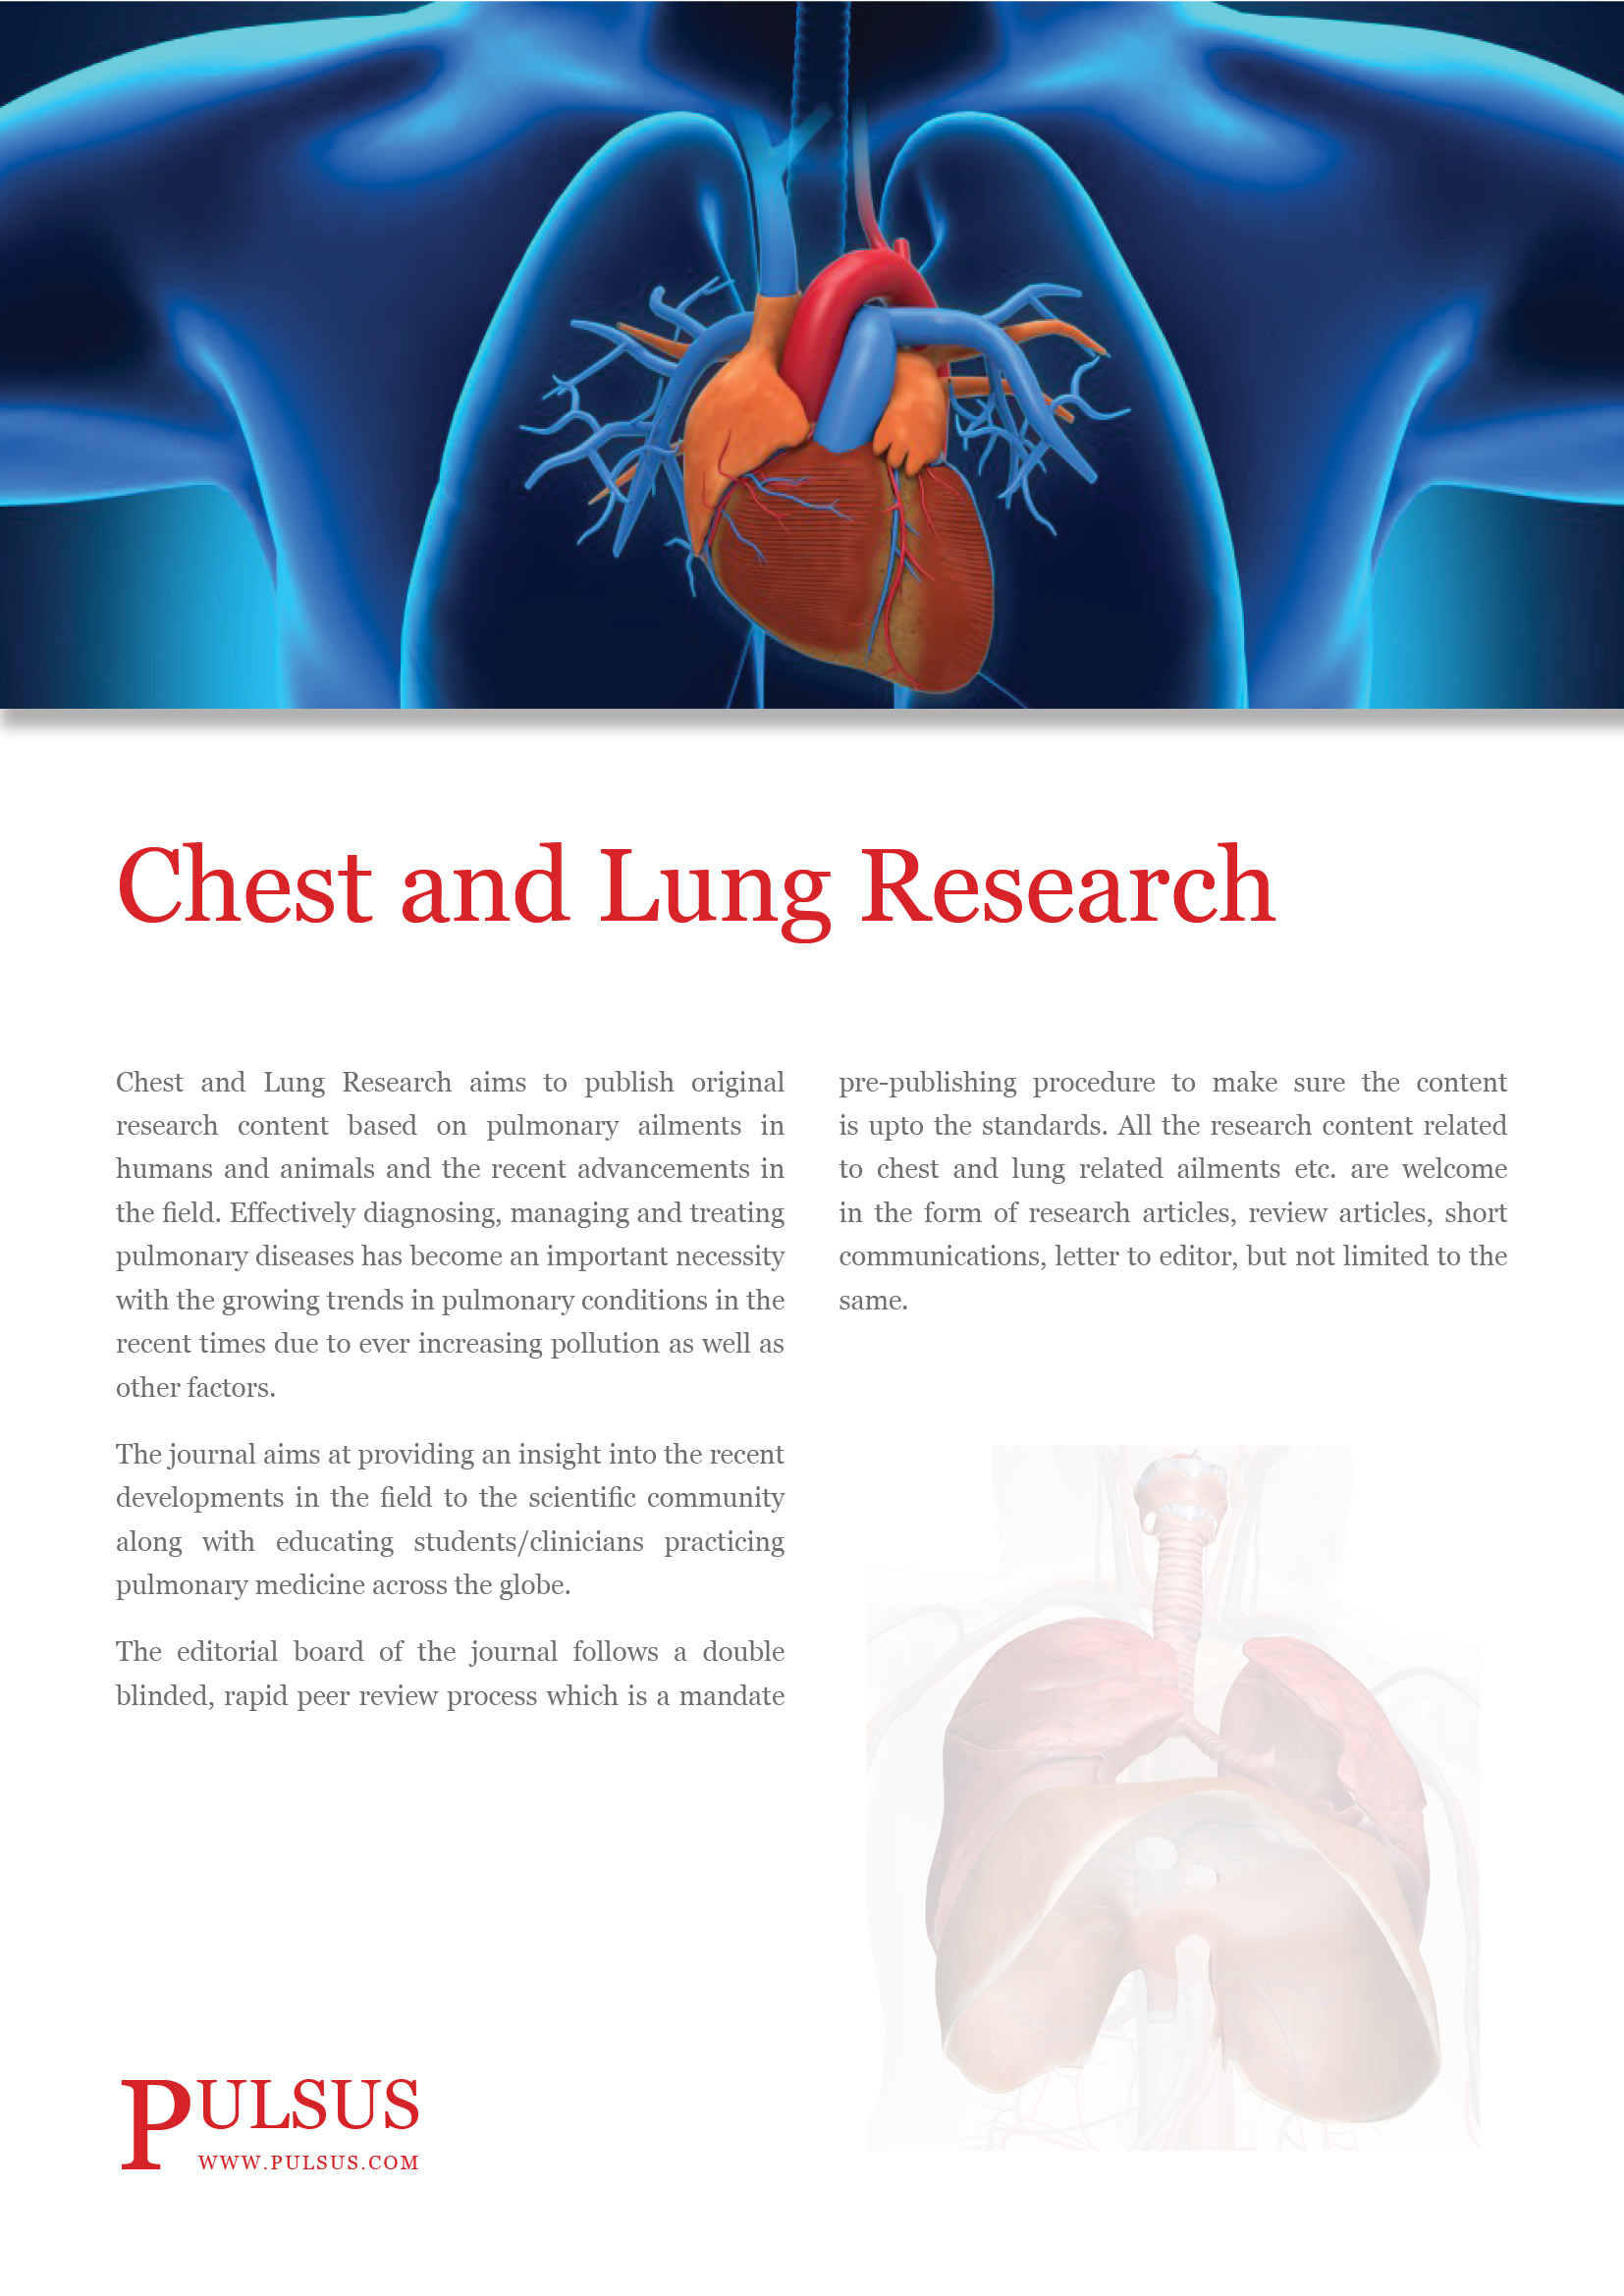 Brust- und Lungenforschung